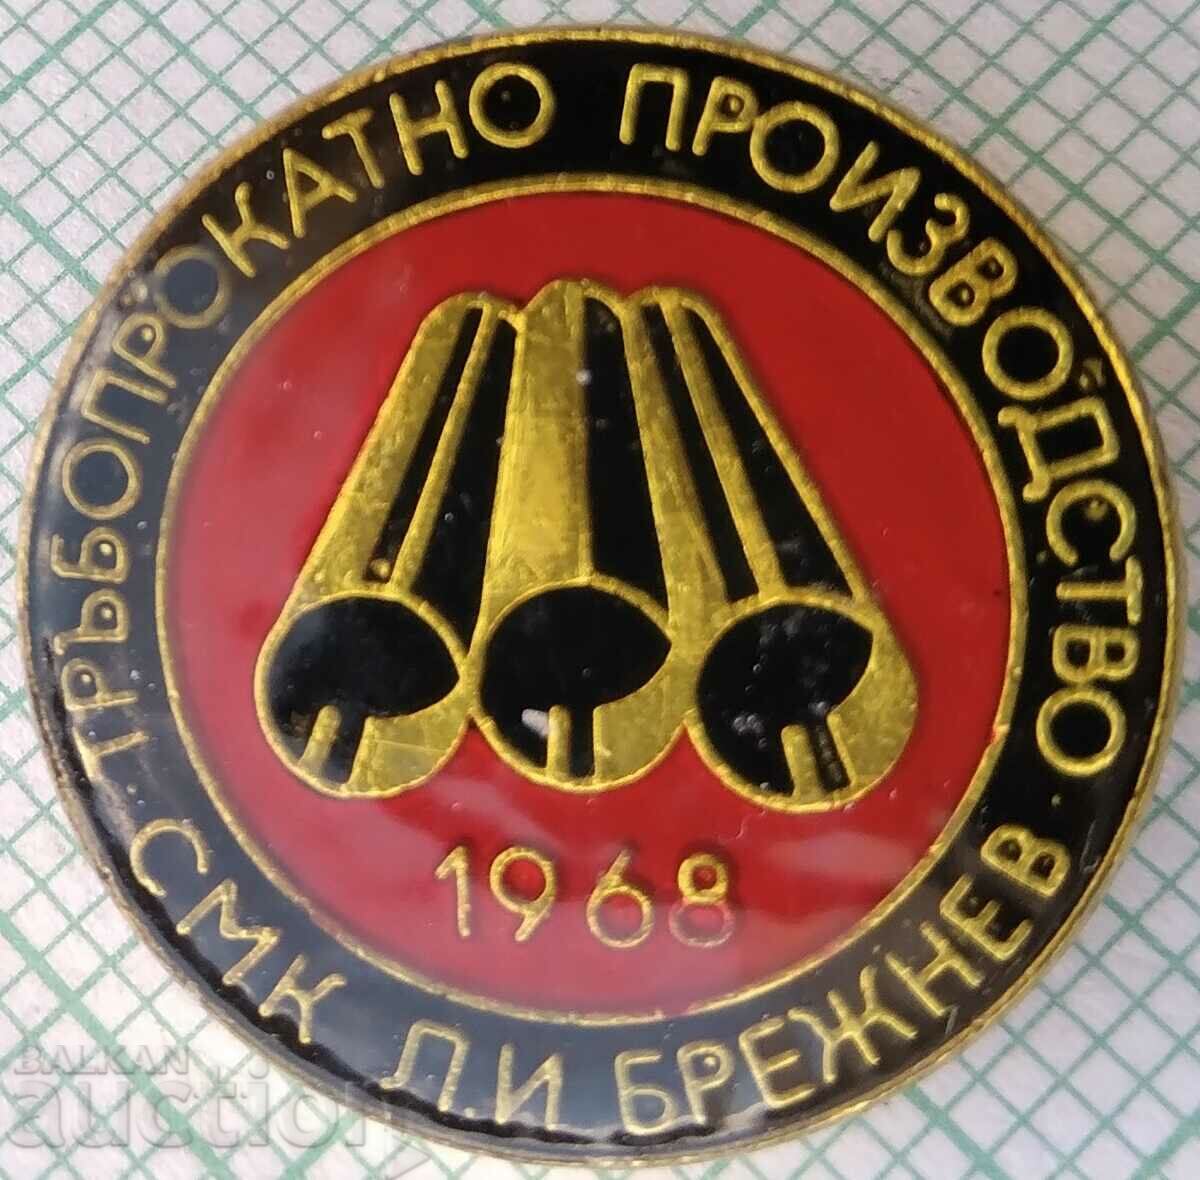 15664 Тръбопрокатно производство завод Кремиковци 1968